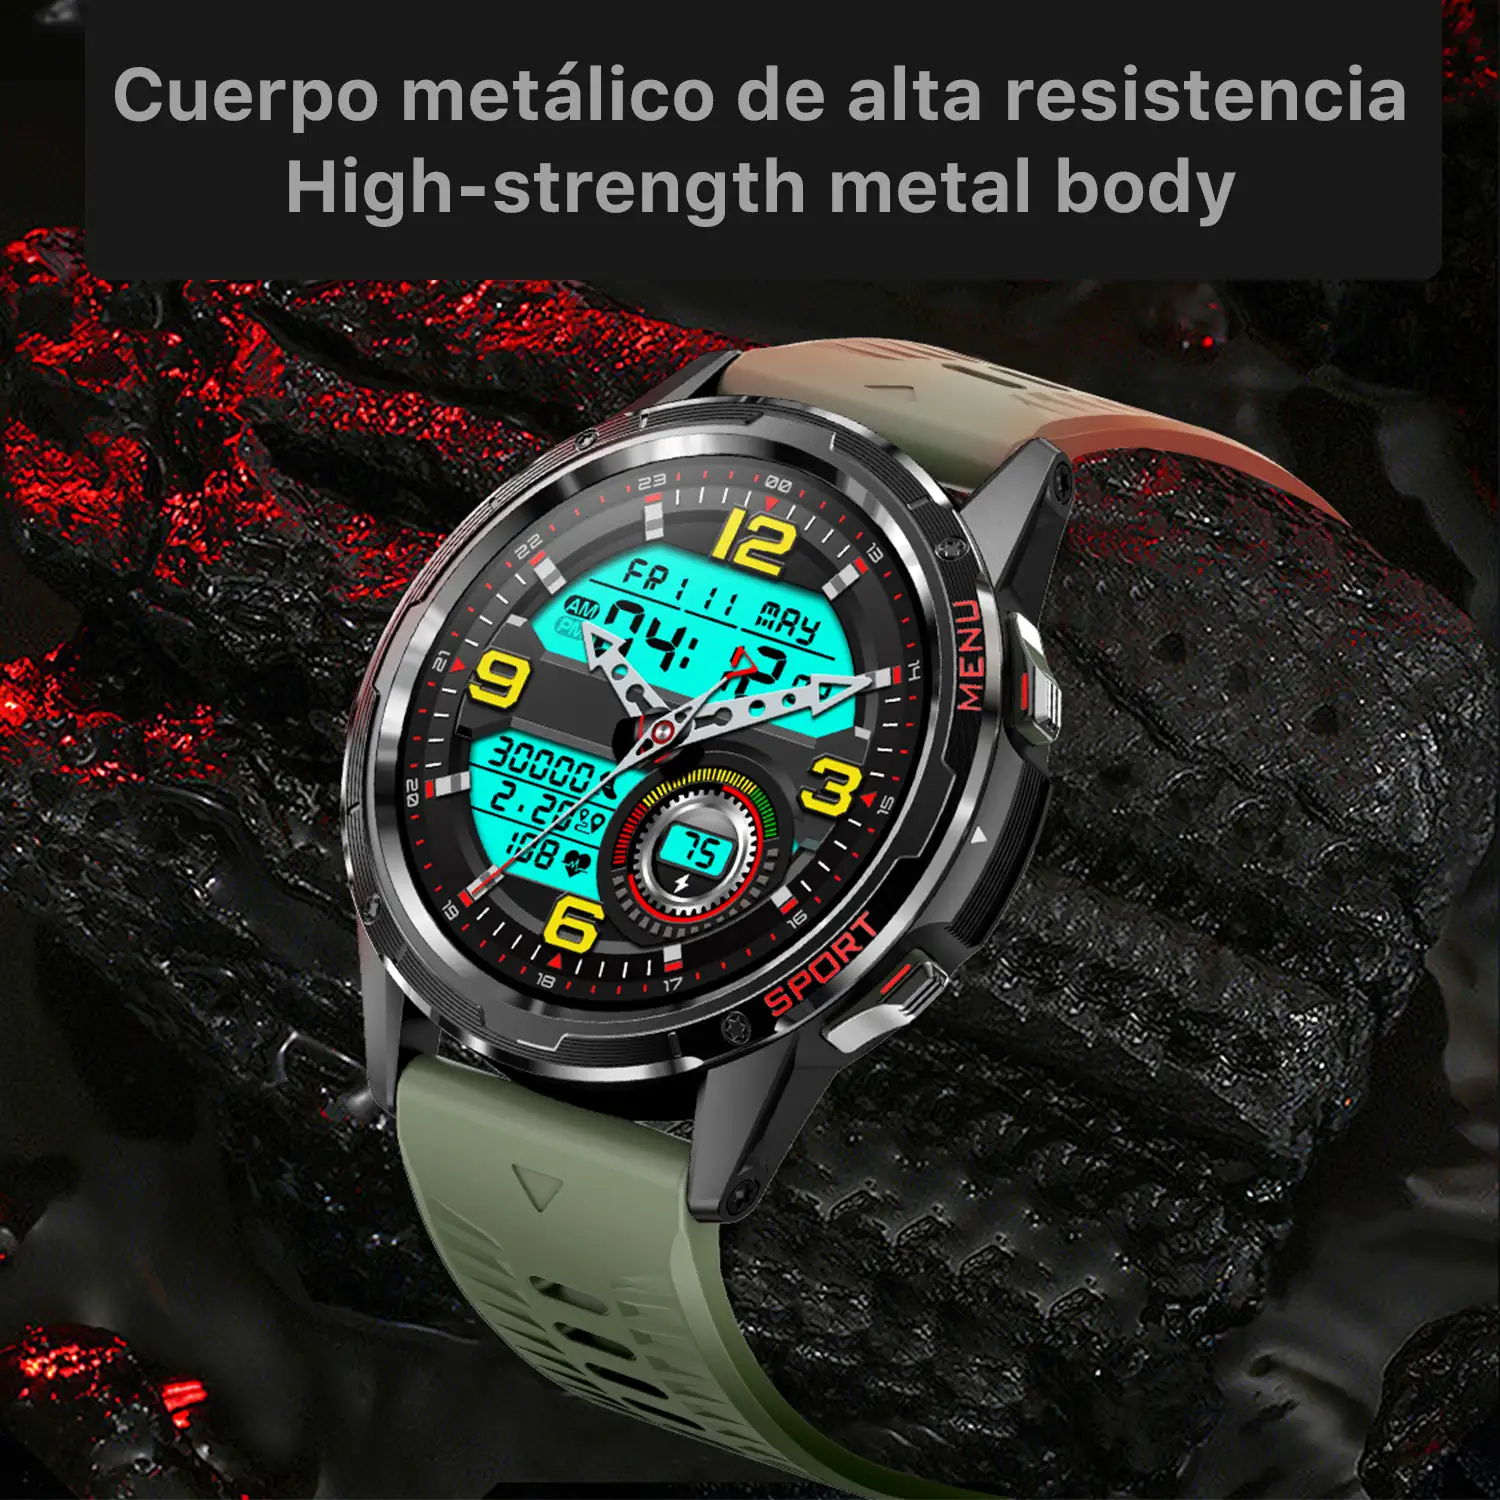 Smartwatch H70 con monitor cardiaco y de tensión. Más de 20 modos deportivos, notificaciones de apps.